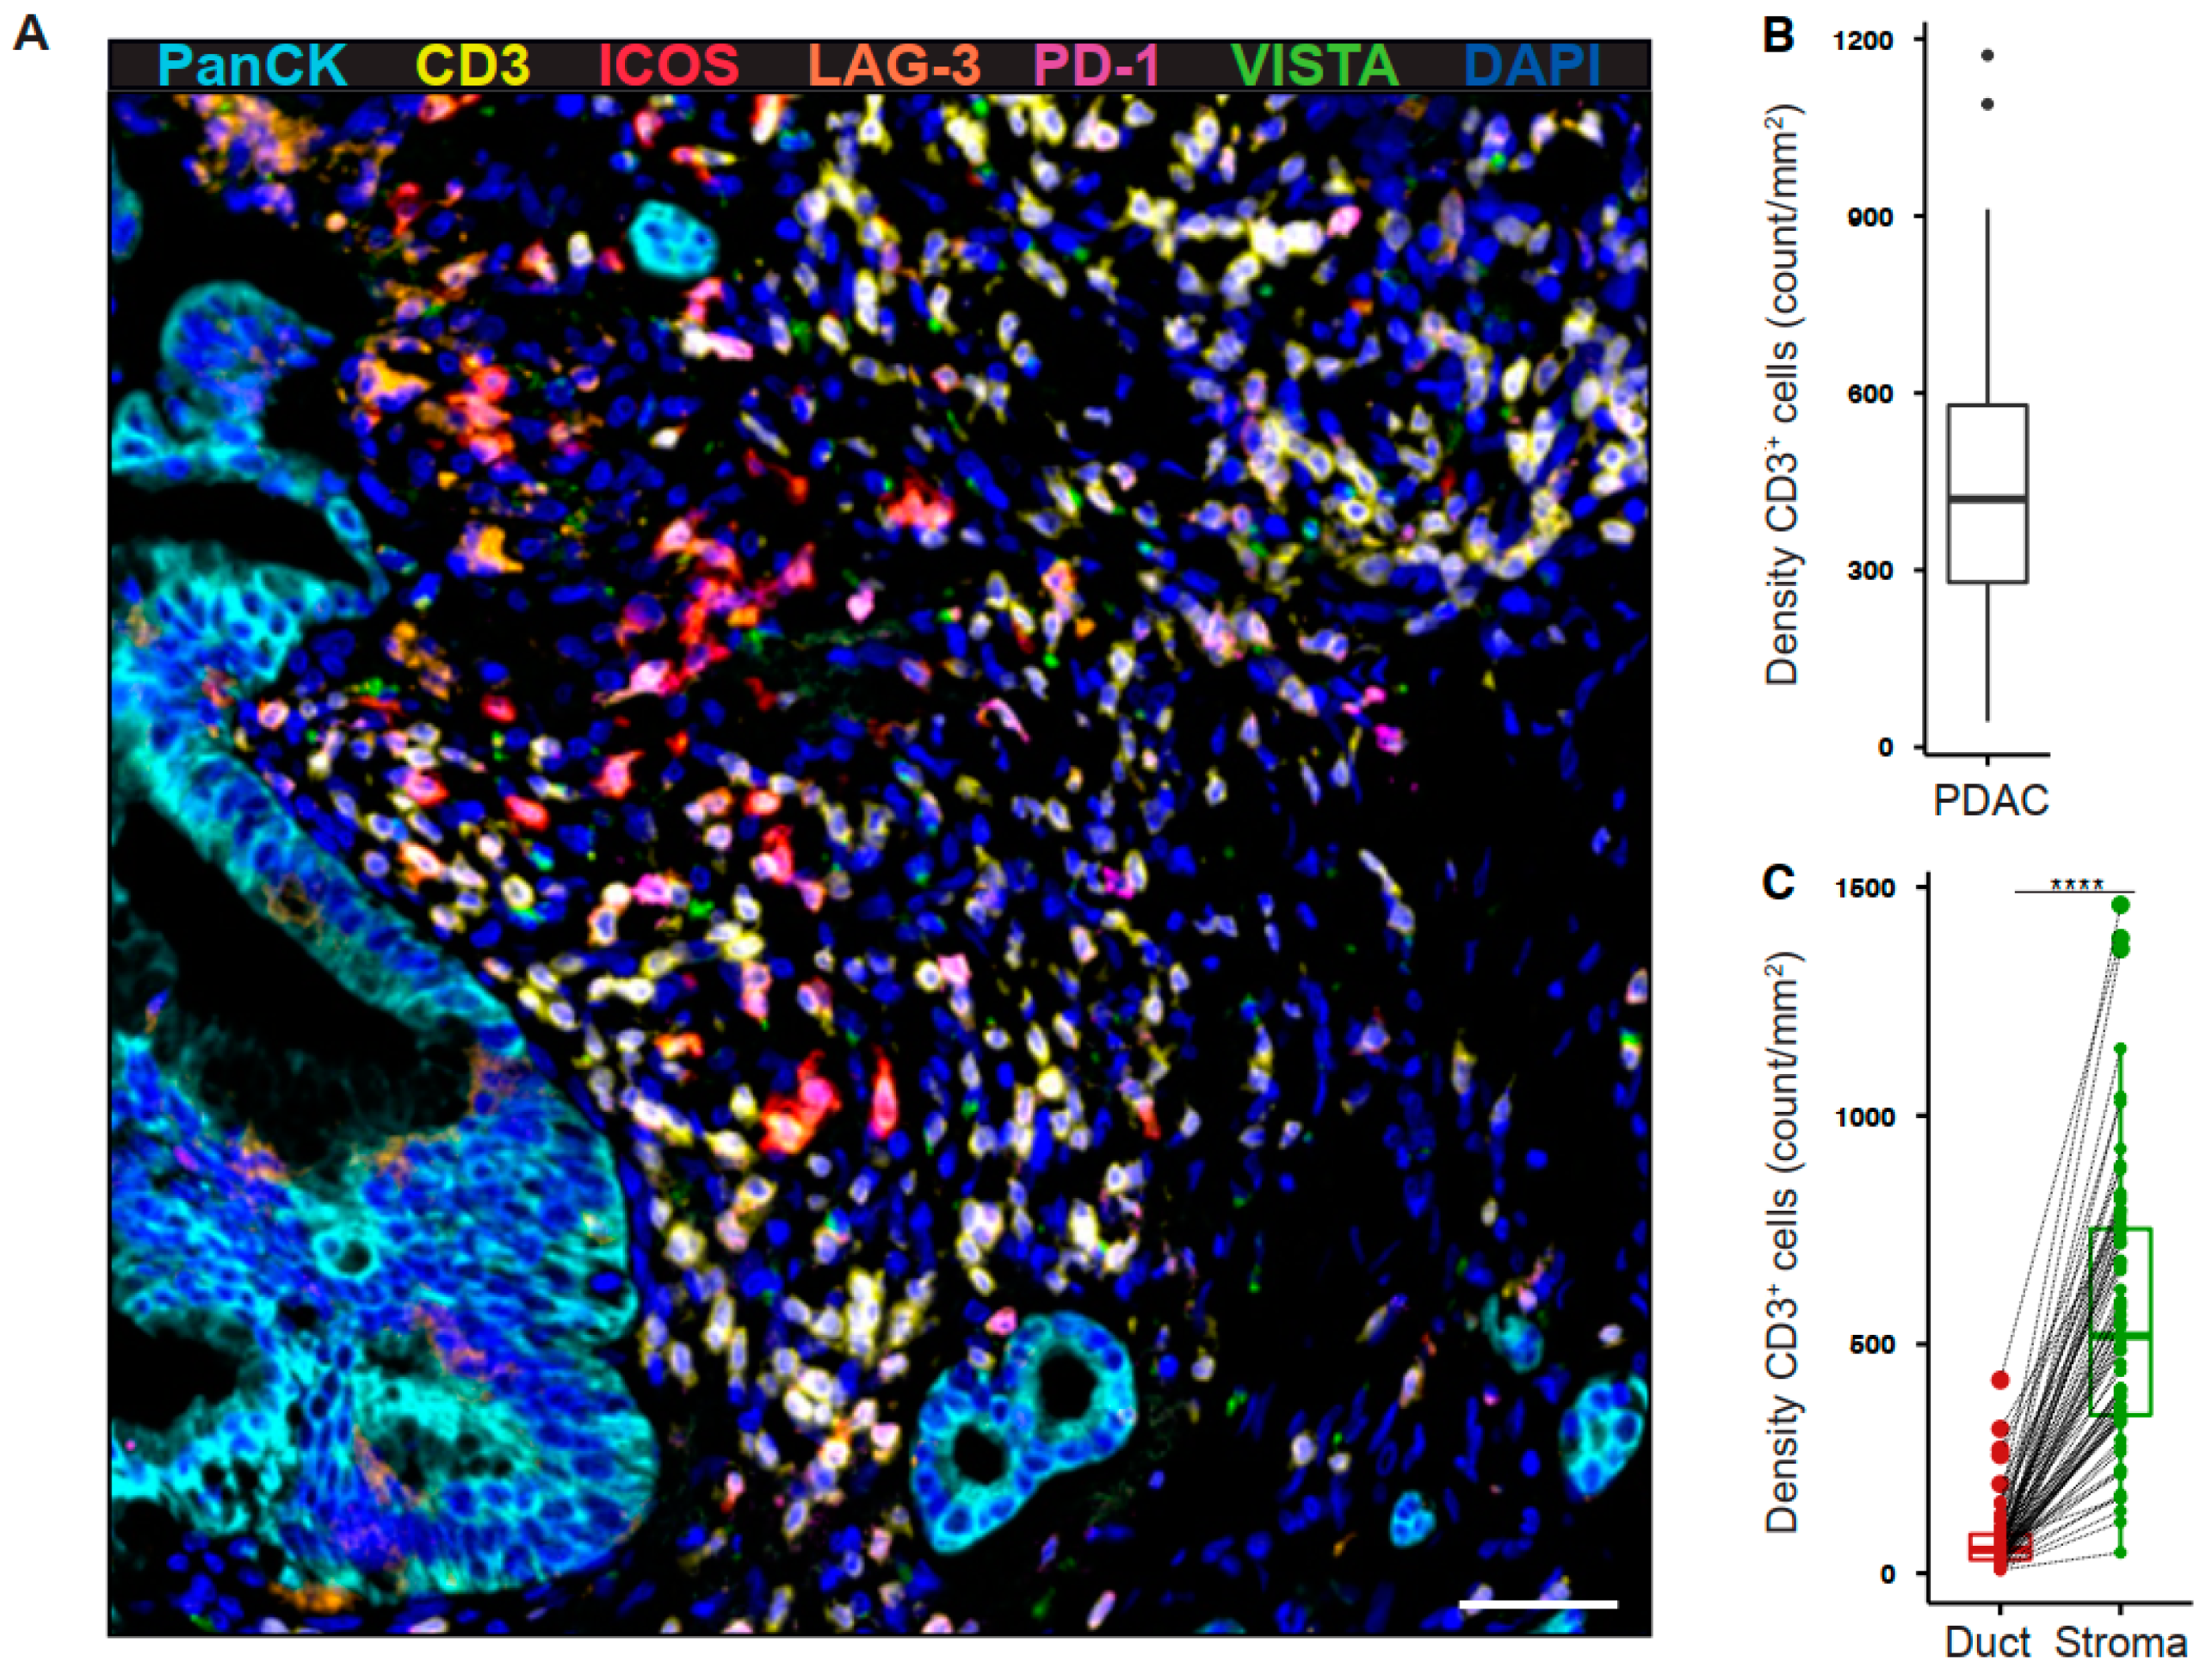 Papiloma krema novi sad - Pancreatic cancer vista